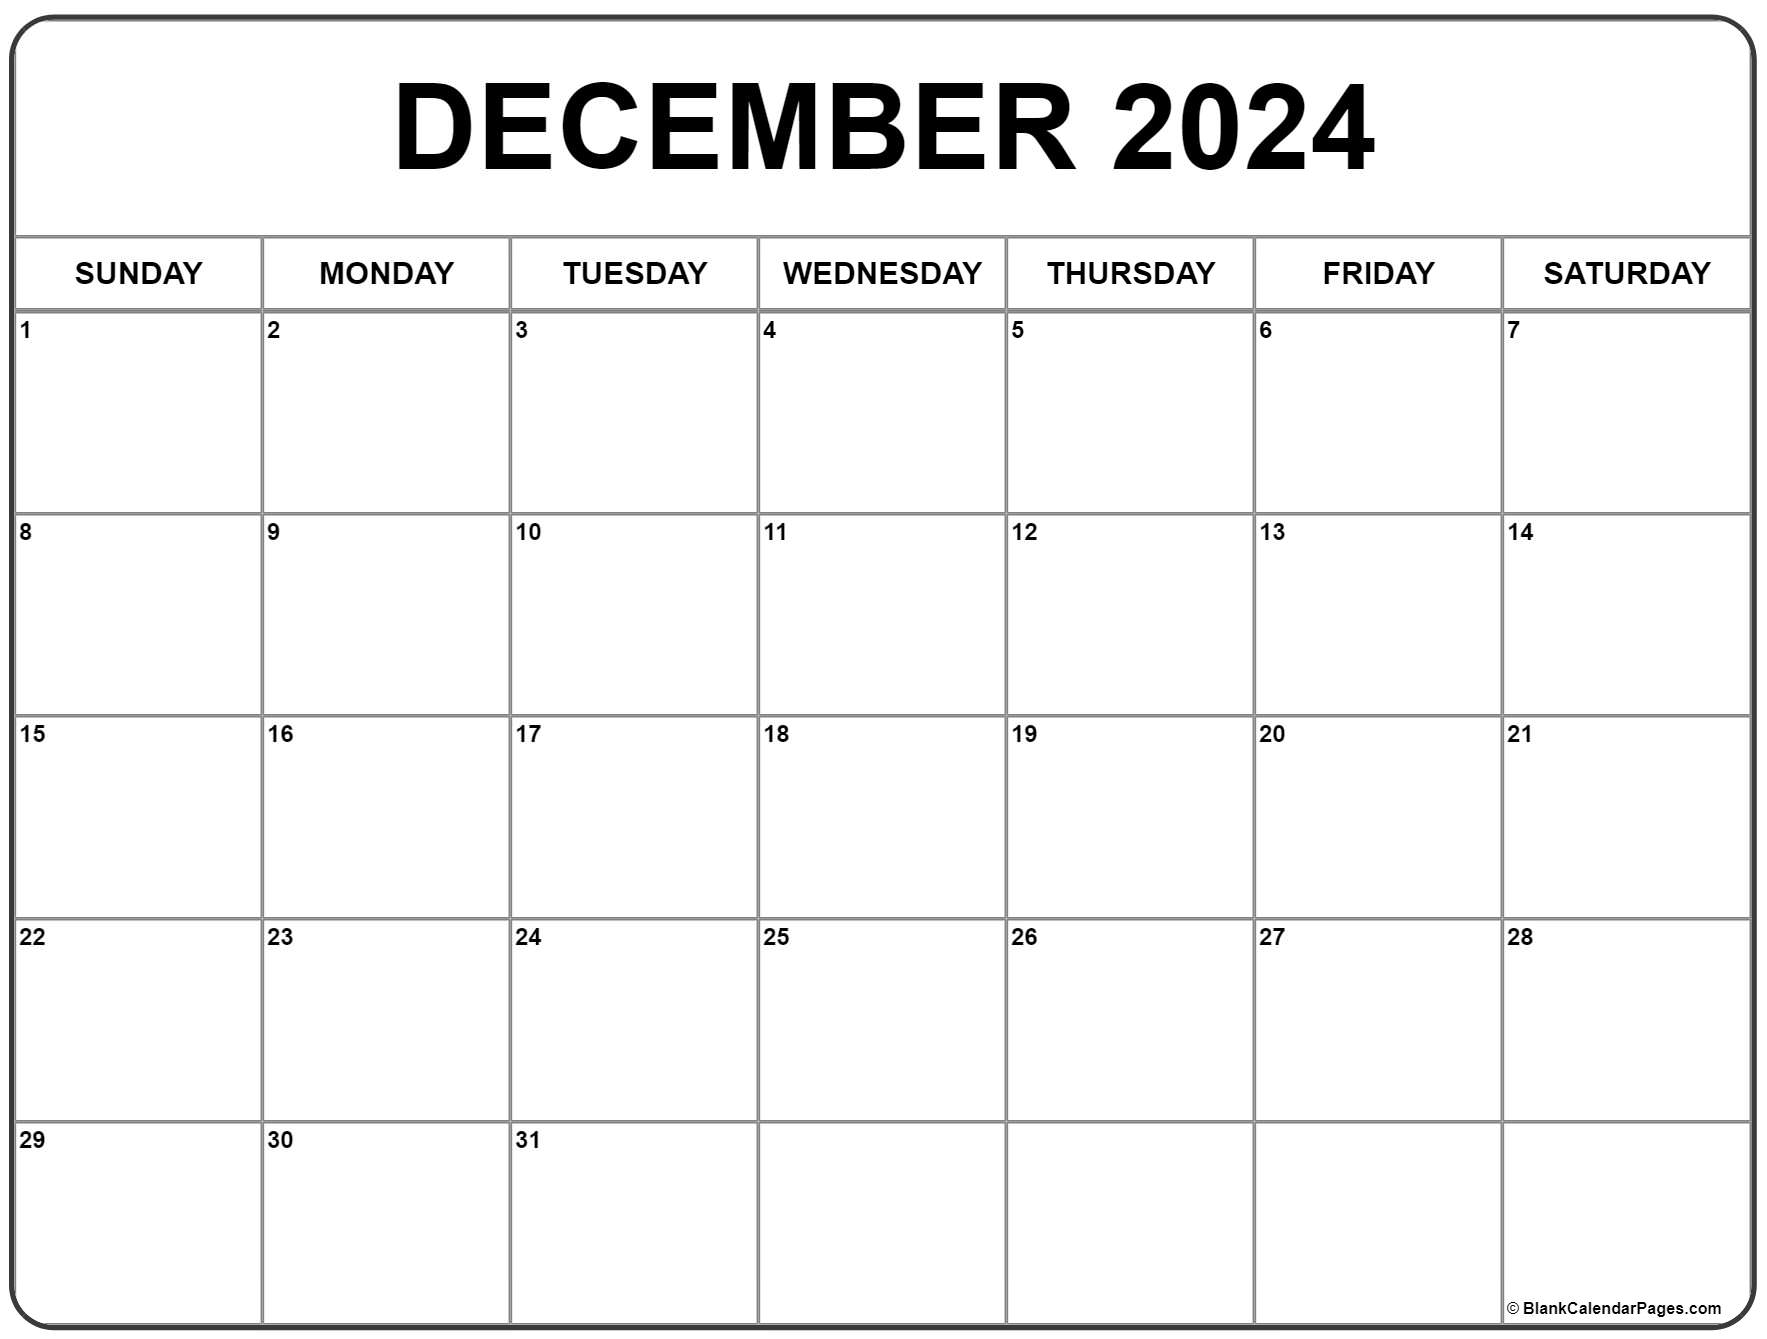 Free December 2022 Calendar Template December 2022 Calendar | Free Printable Calendar Templates